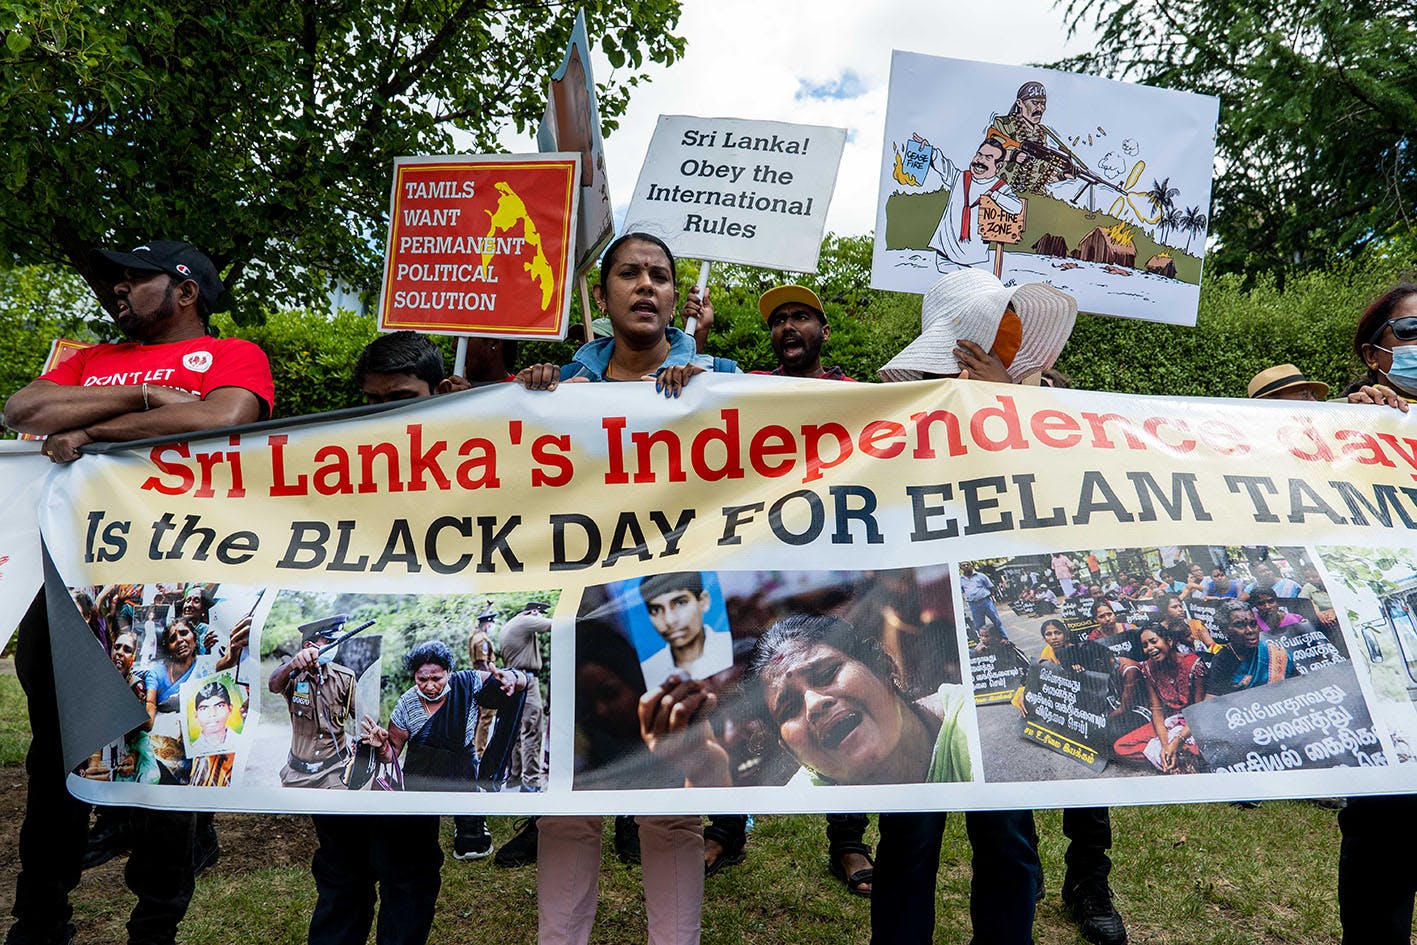 75 years of Tamil oppression in Sri Lanka